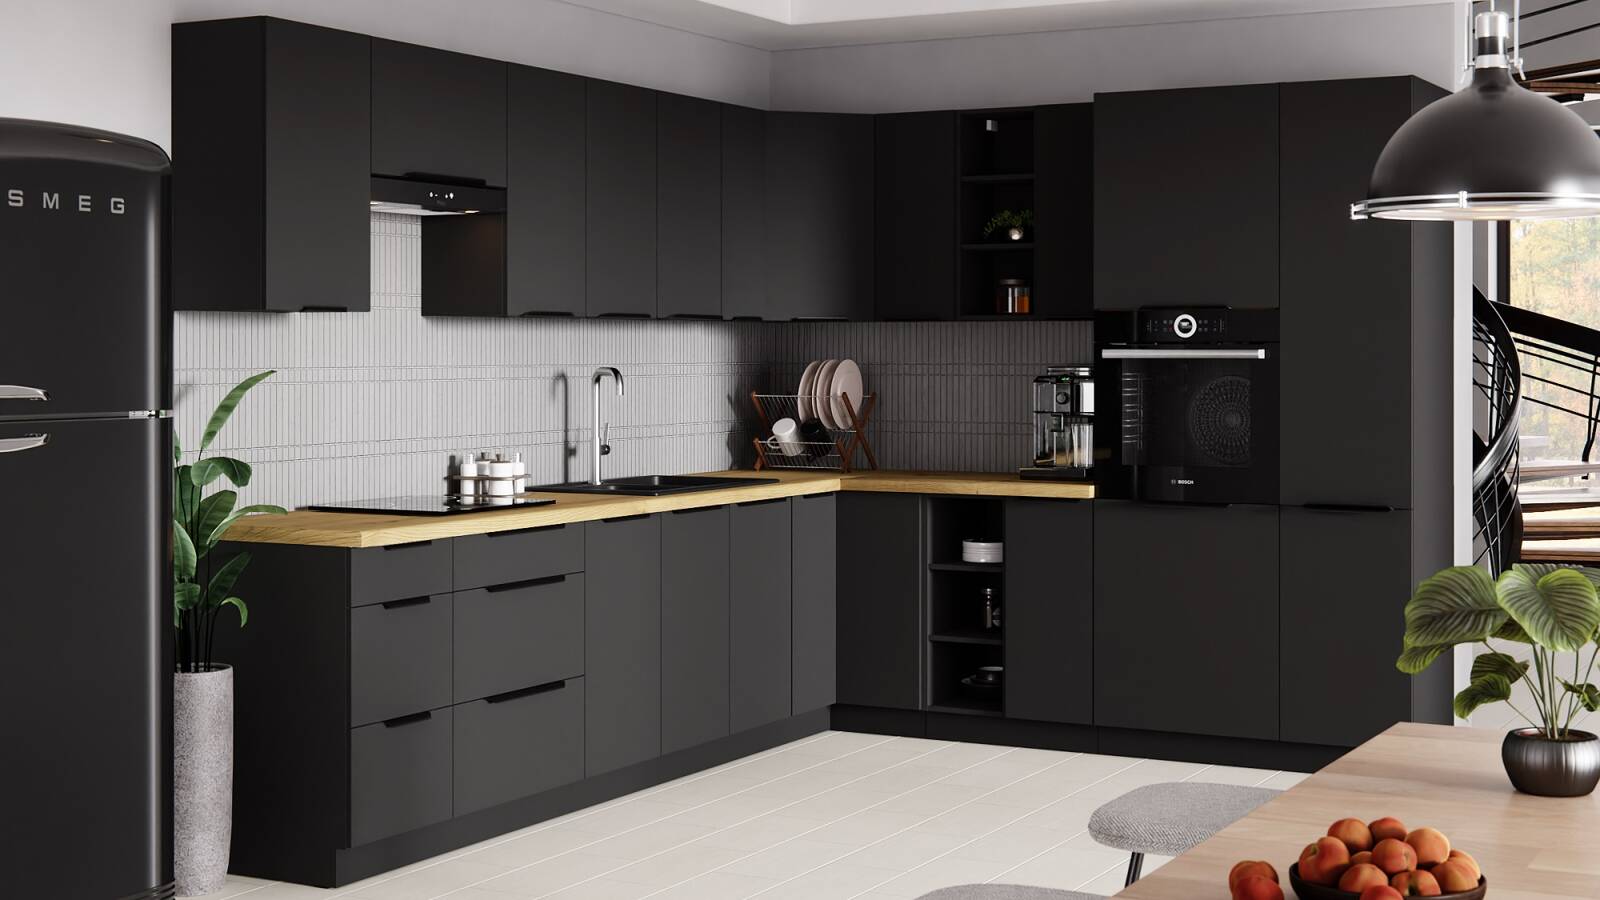 Küchensockel Schwarz 60 DPM-210 2F Einbau-Mikrowelle und Backofen Schrank  resistent gegen Dampf, Hitze und Flecken | Unsere Möbel für alle -  24unseremoebel